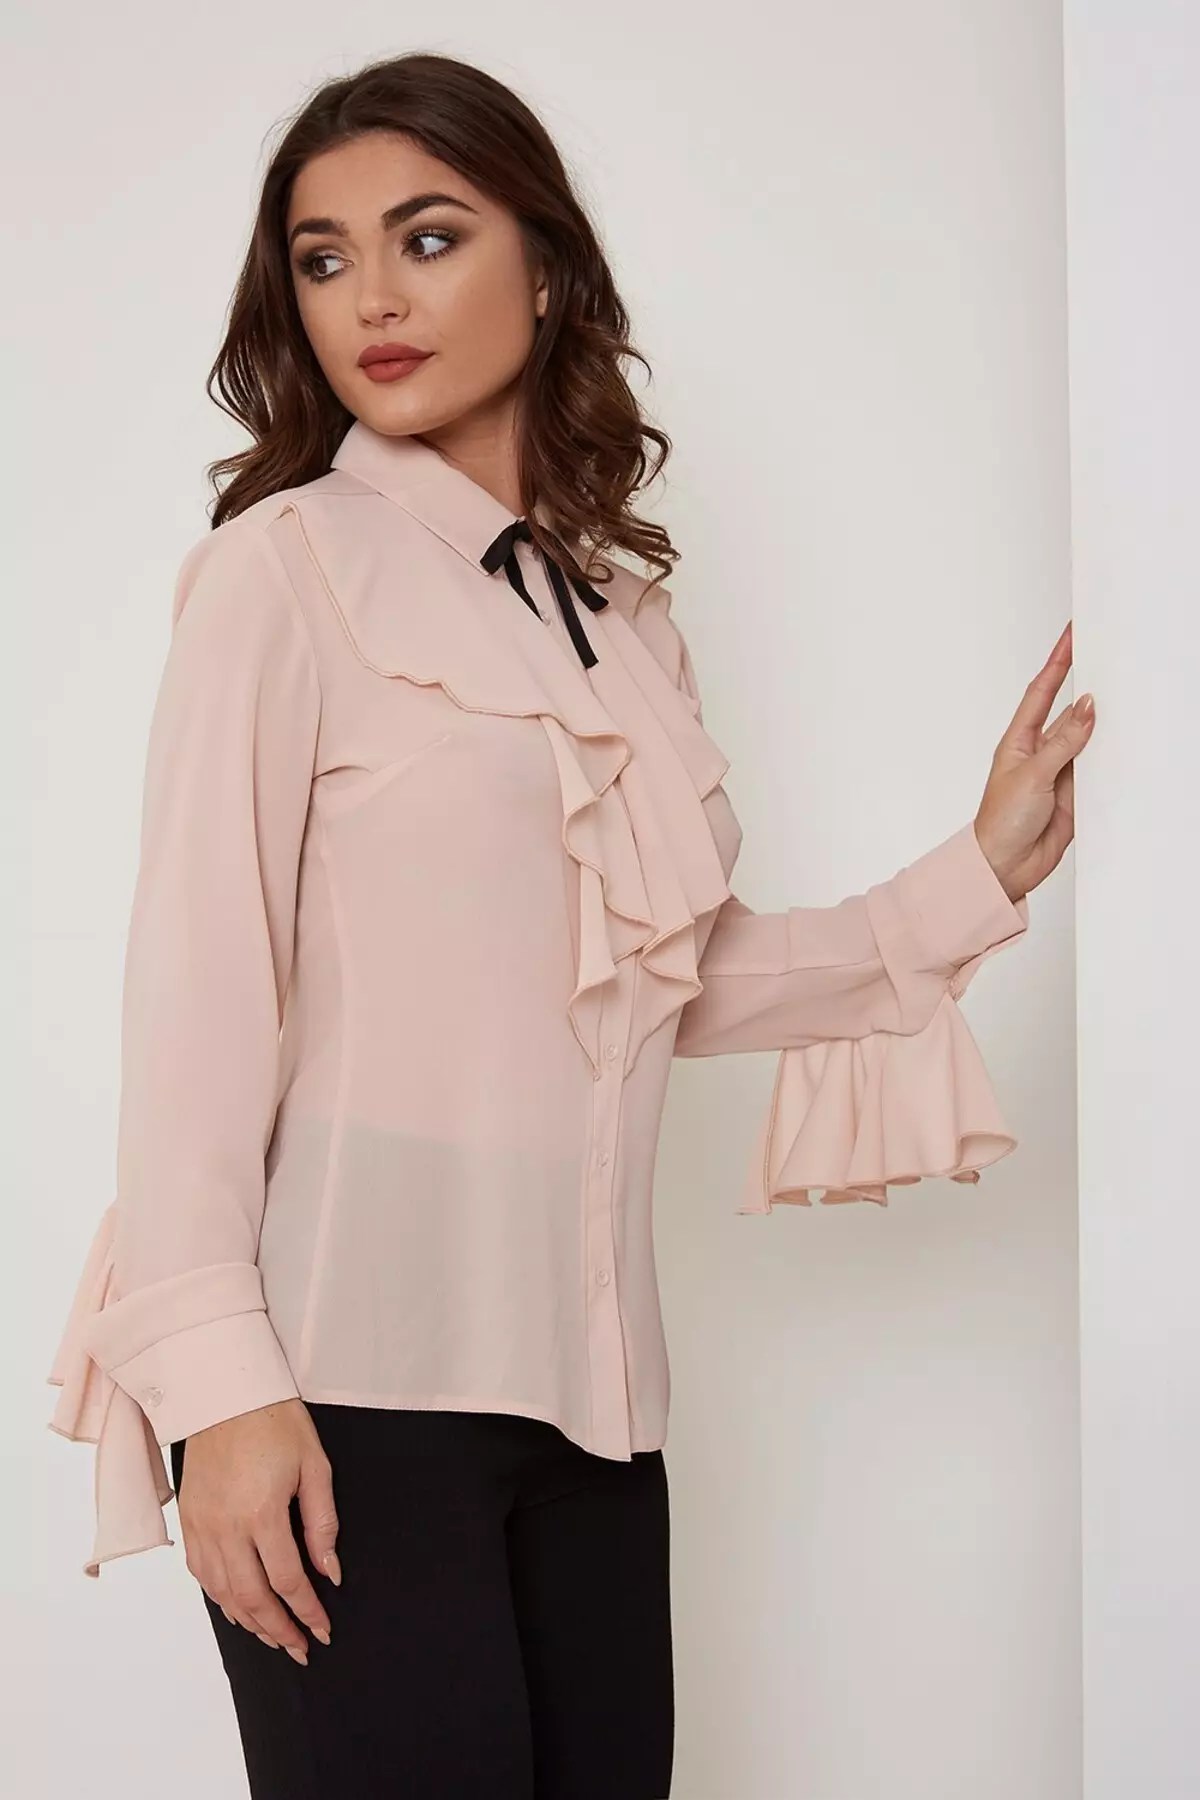 Che reggiseno di colore indossare sotto la camicetta (46 foto): come combinare una camicetta rosa e un reggiseno di tono brillante, beige, ensemble verdi 14905_12